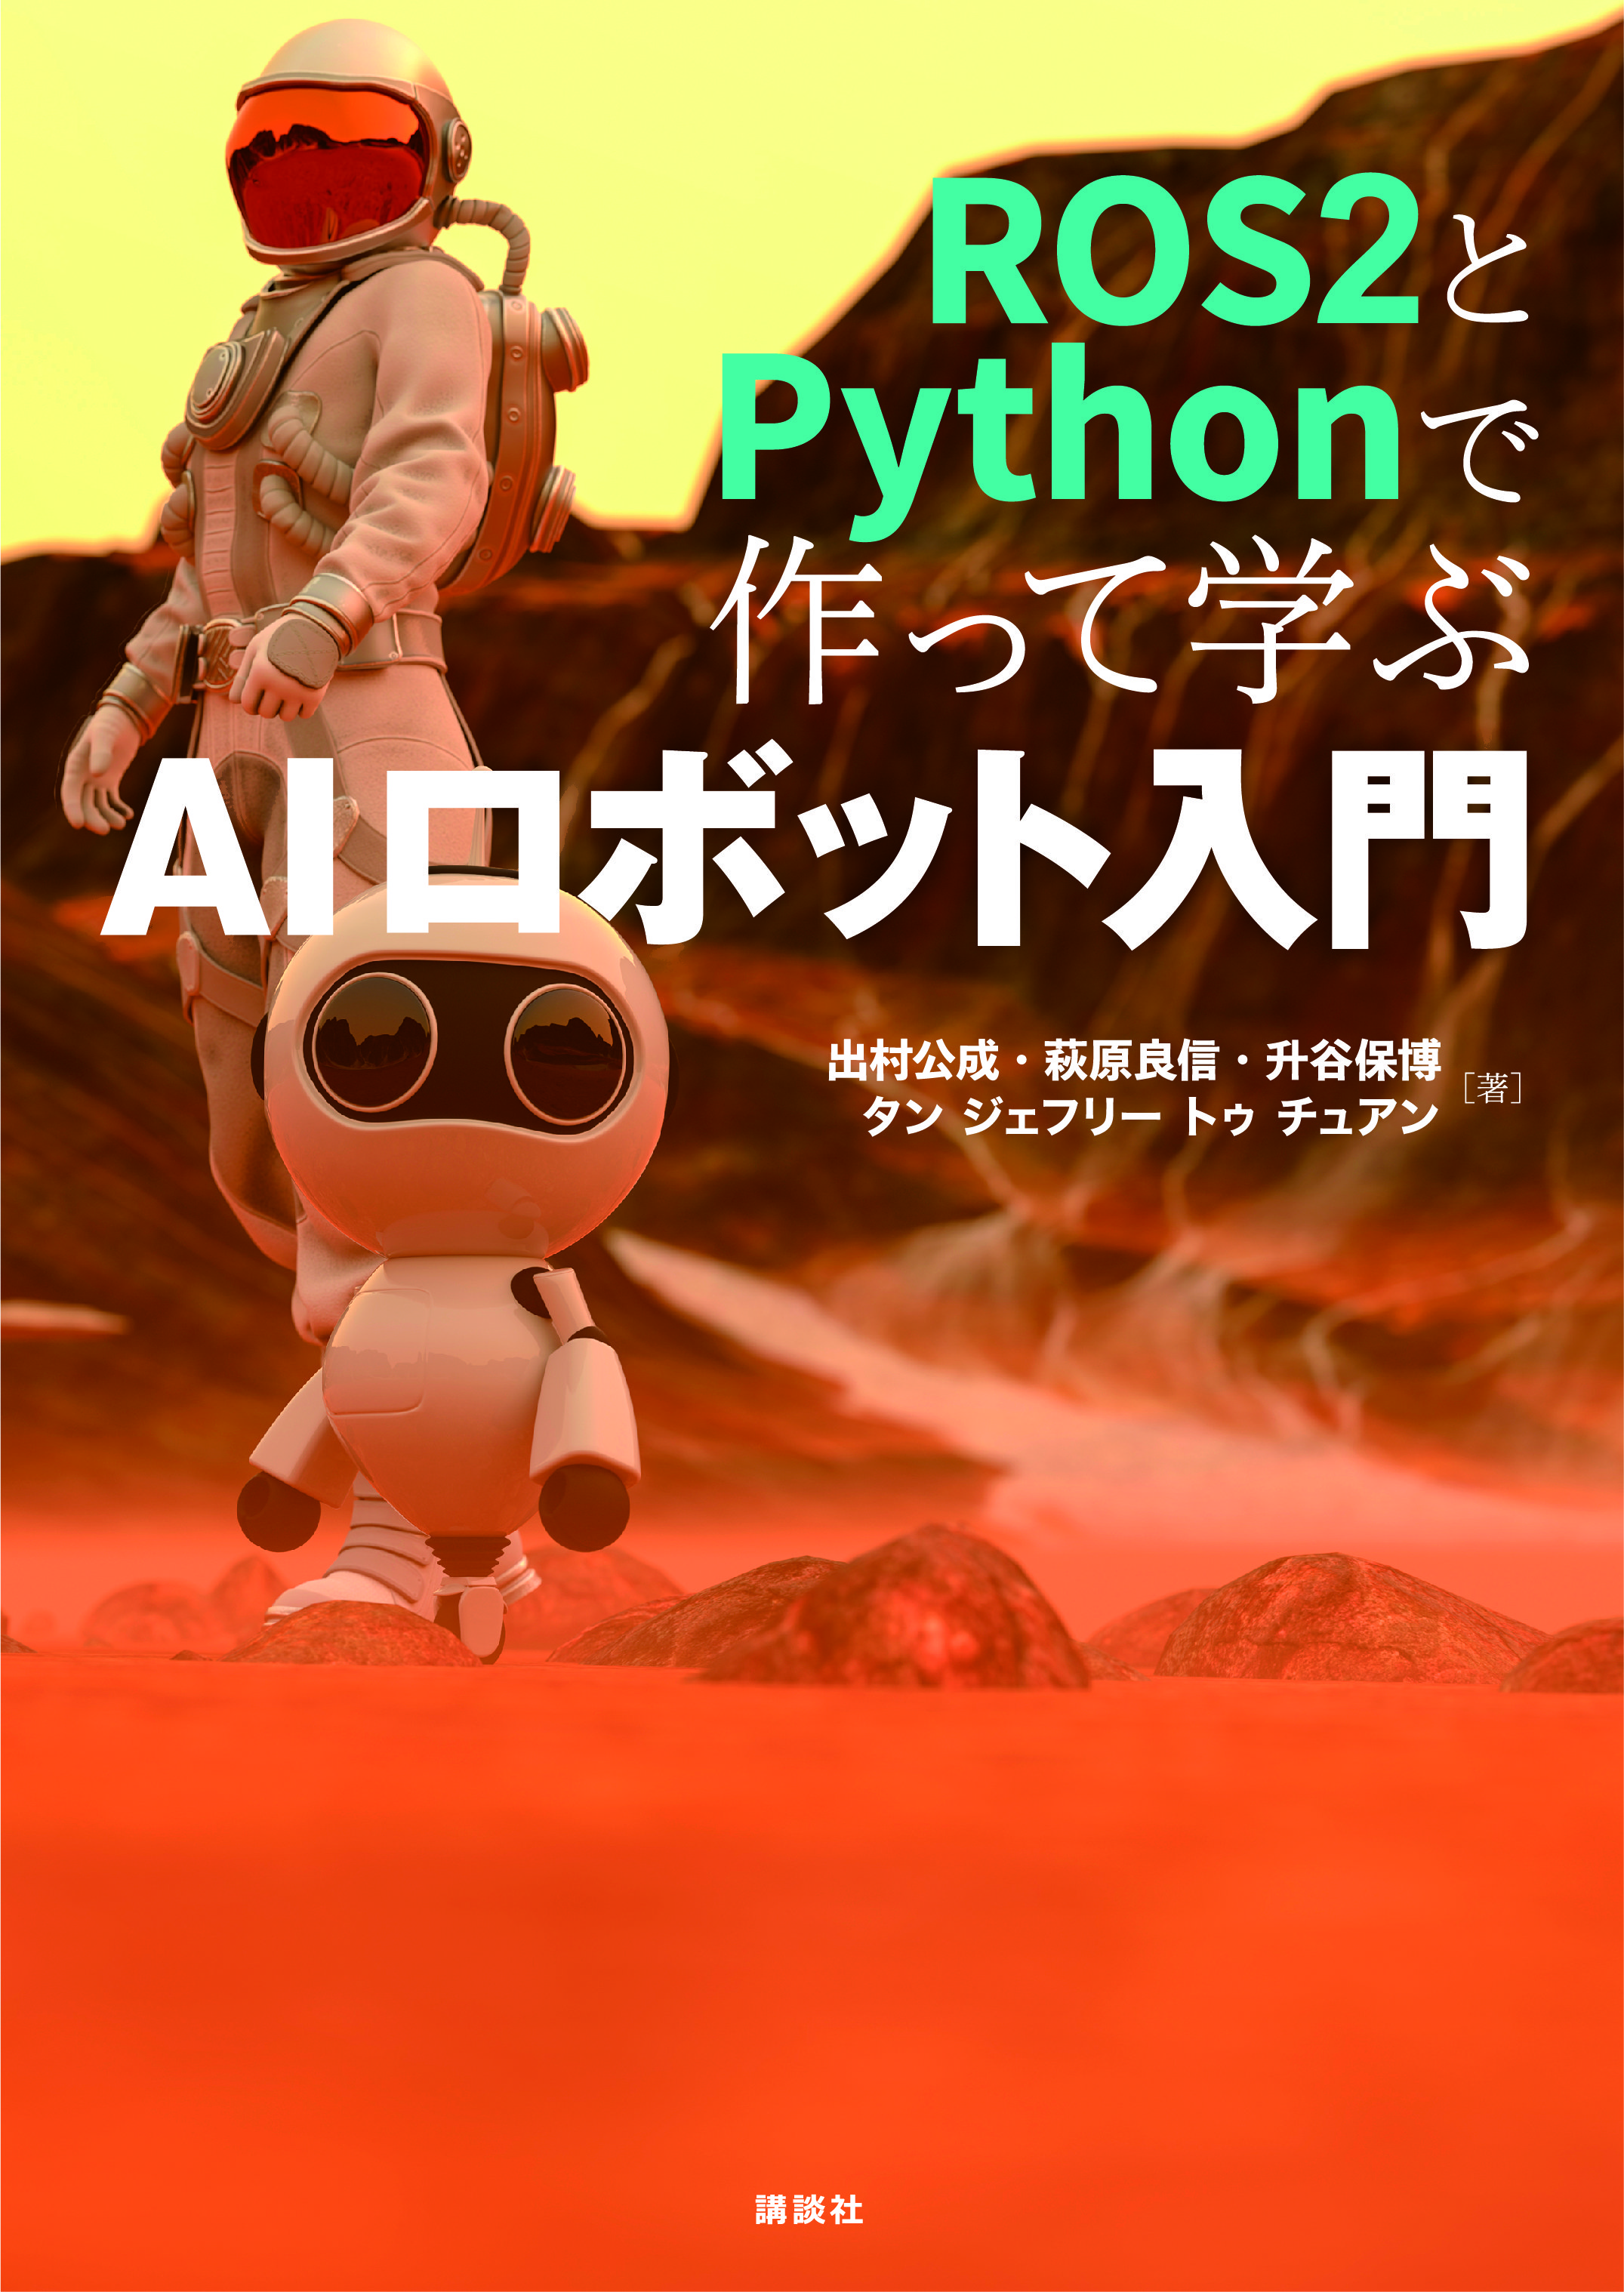 ROS2 と Python で作って学ぶ AI ロボット入門